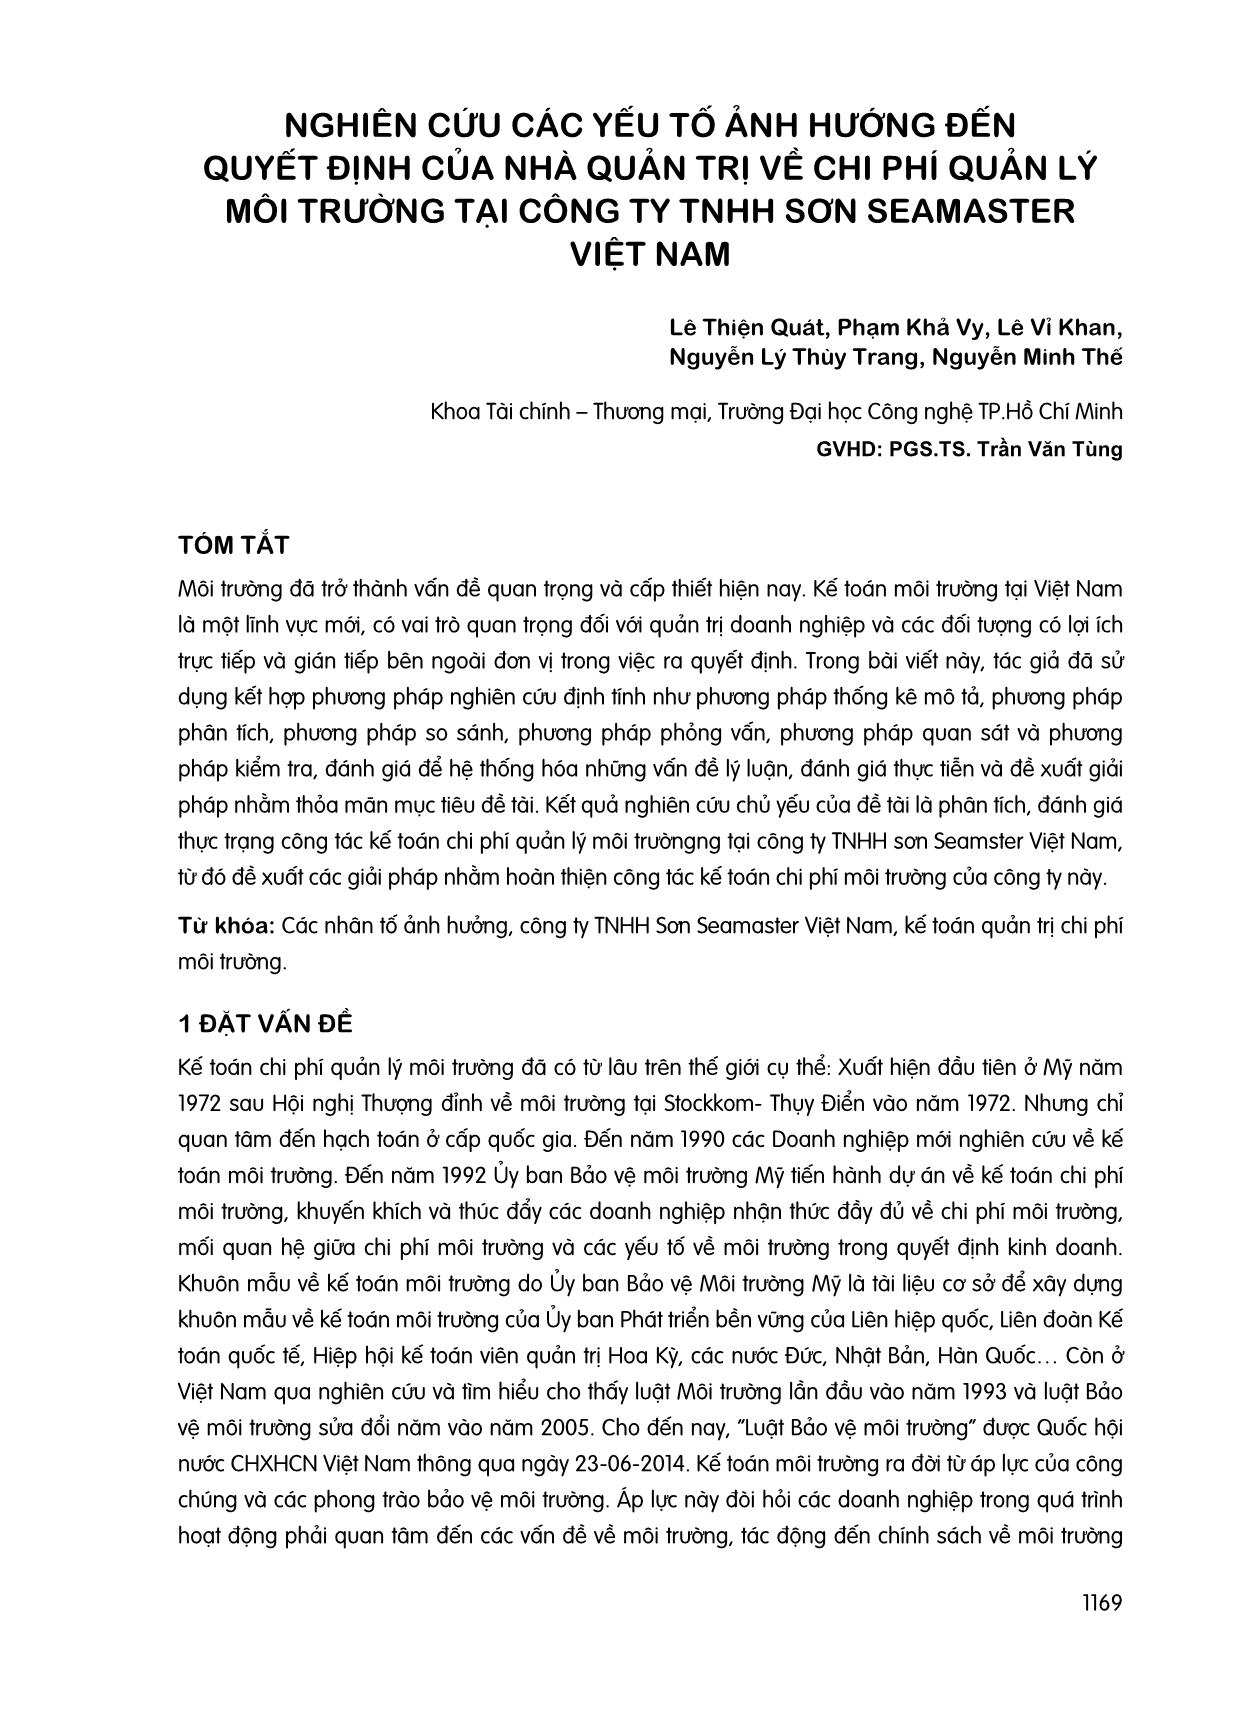 Nghiên cứu các yếu tố ảnh hướng đến quyết định của nhà quản trị về chi phí quản lý môi trường tại công ty tnhh sơn seamaster Việt Nam trang 1